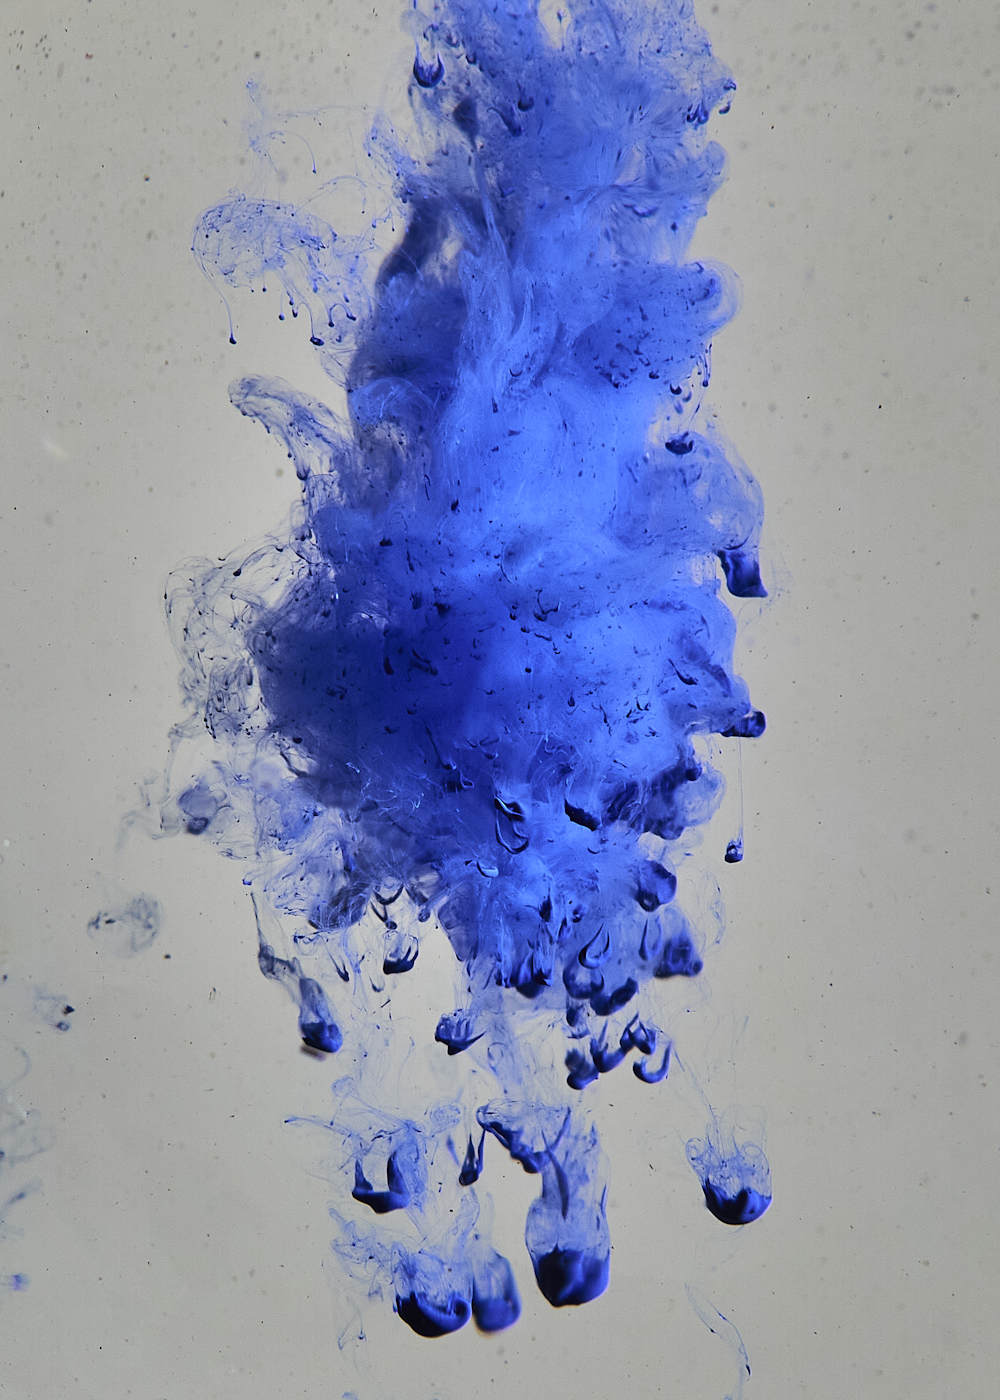 a blue liquid splashing